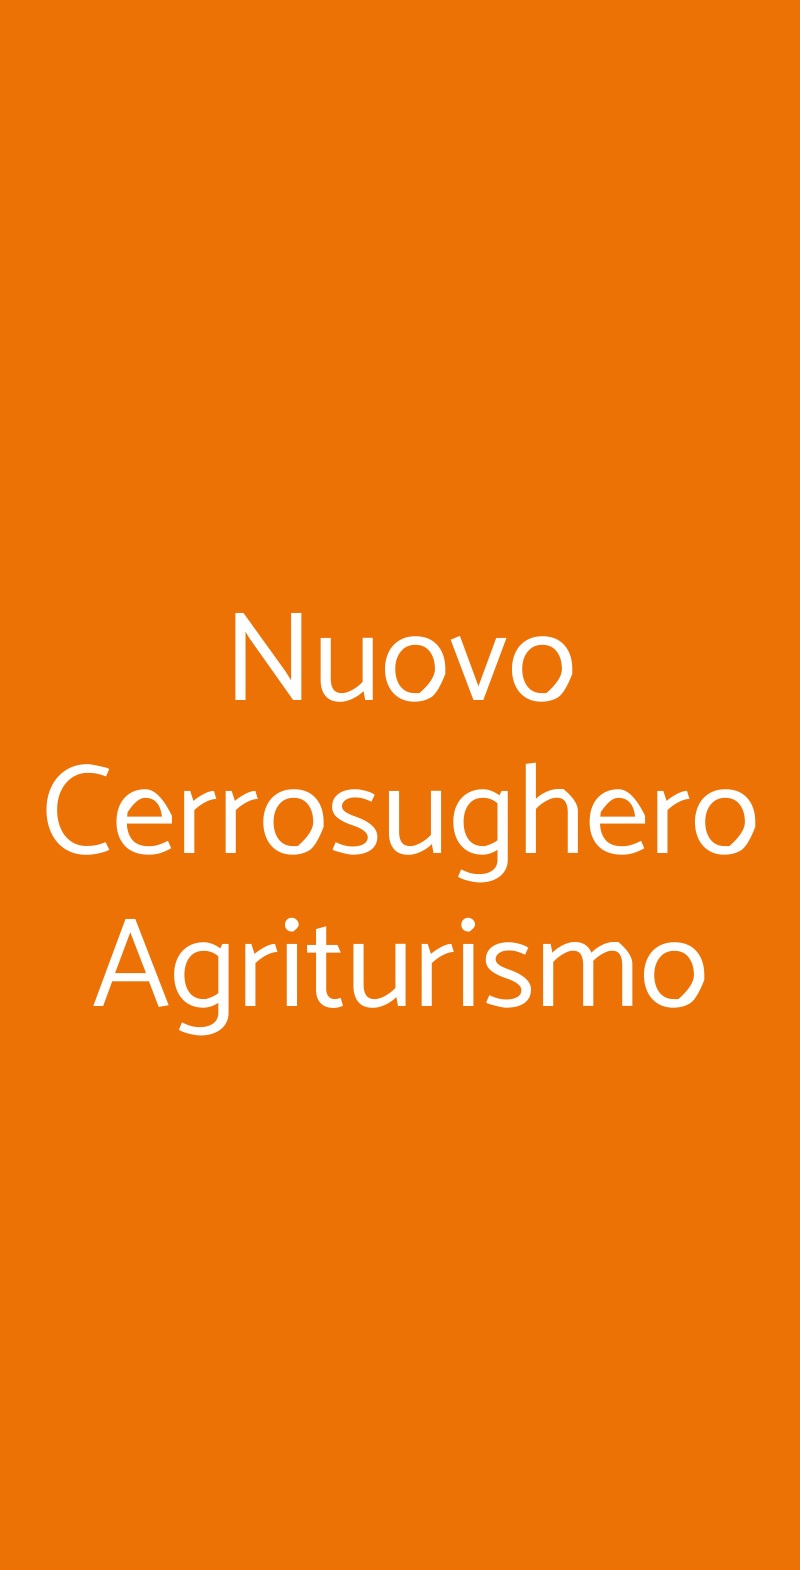 Nuovo Cerrosughero Agriturismo Canino menù 1 pagina